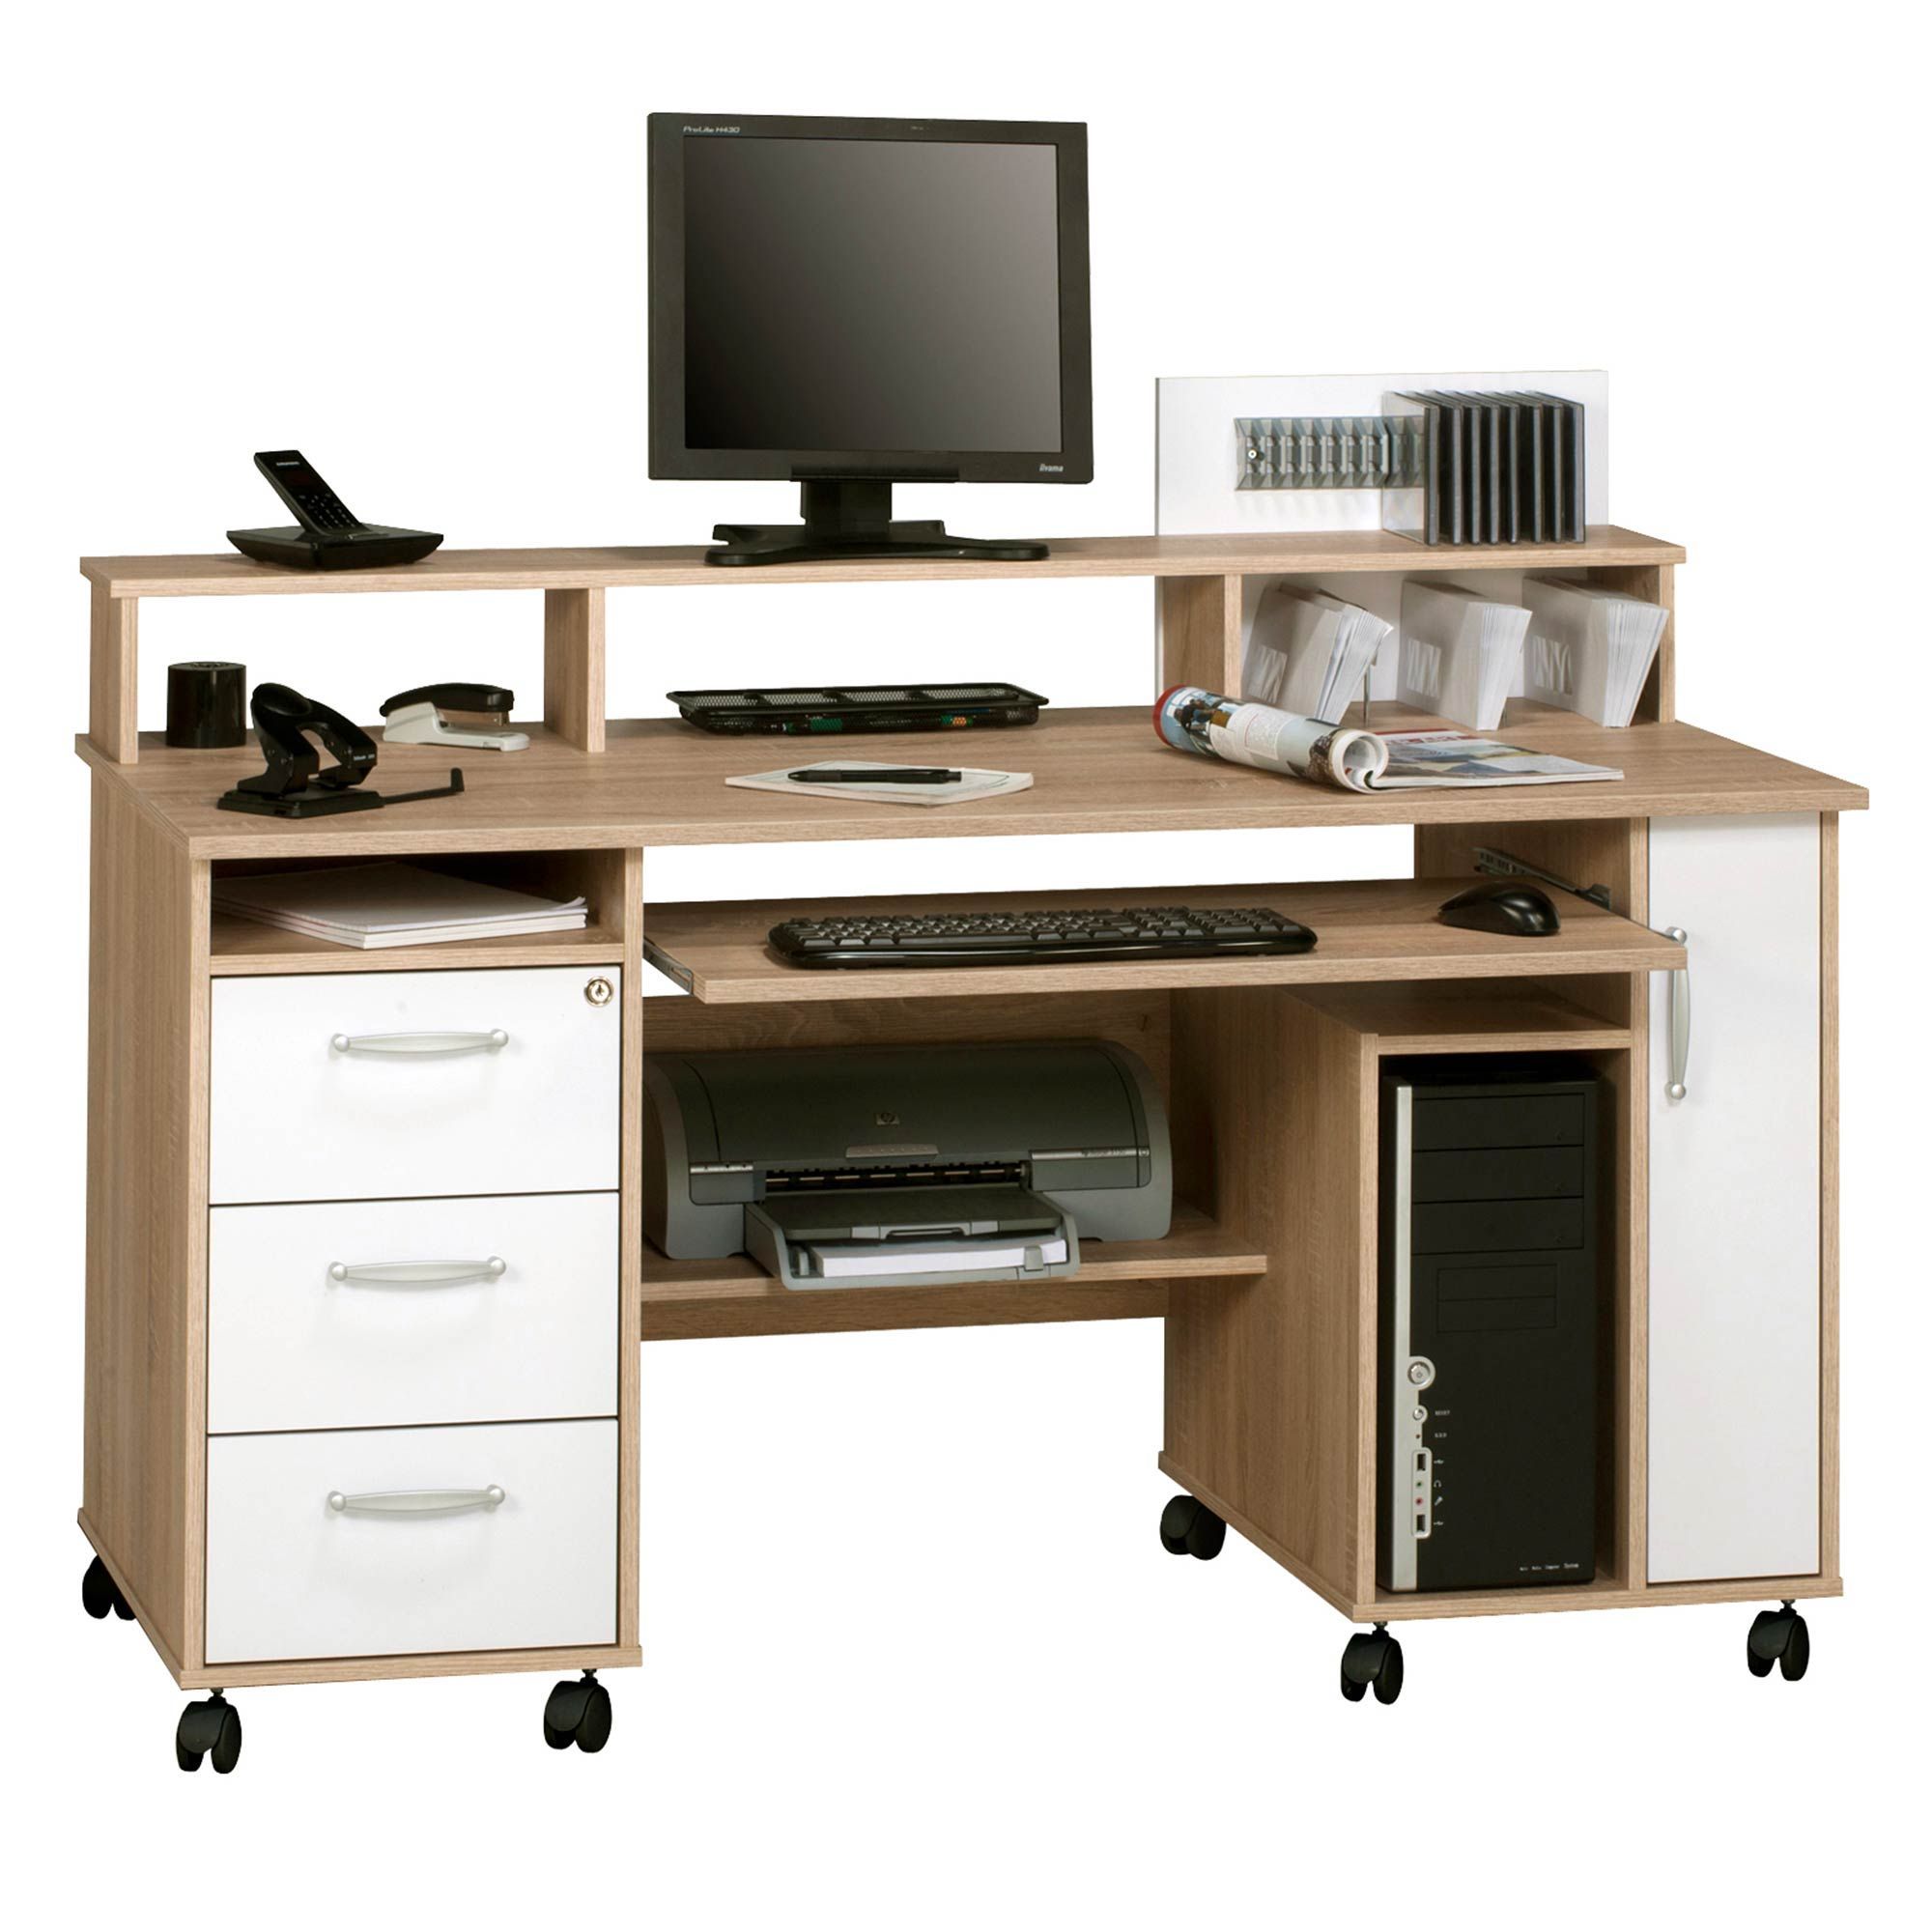 Kilkenny Desk/workstation Oak & White I Home Office Desk I Study Desk Intended For White Finish Office Study Work Desks (View 15 of 15)